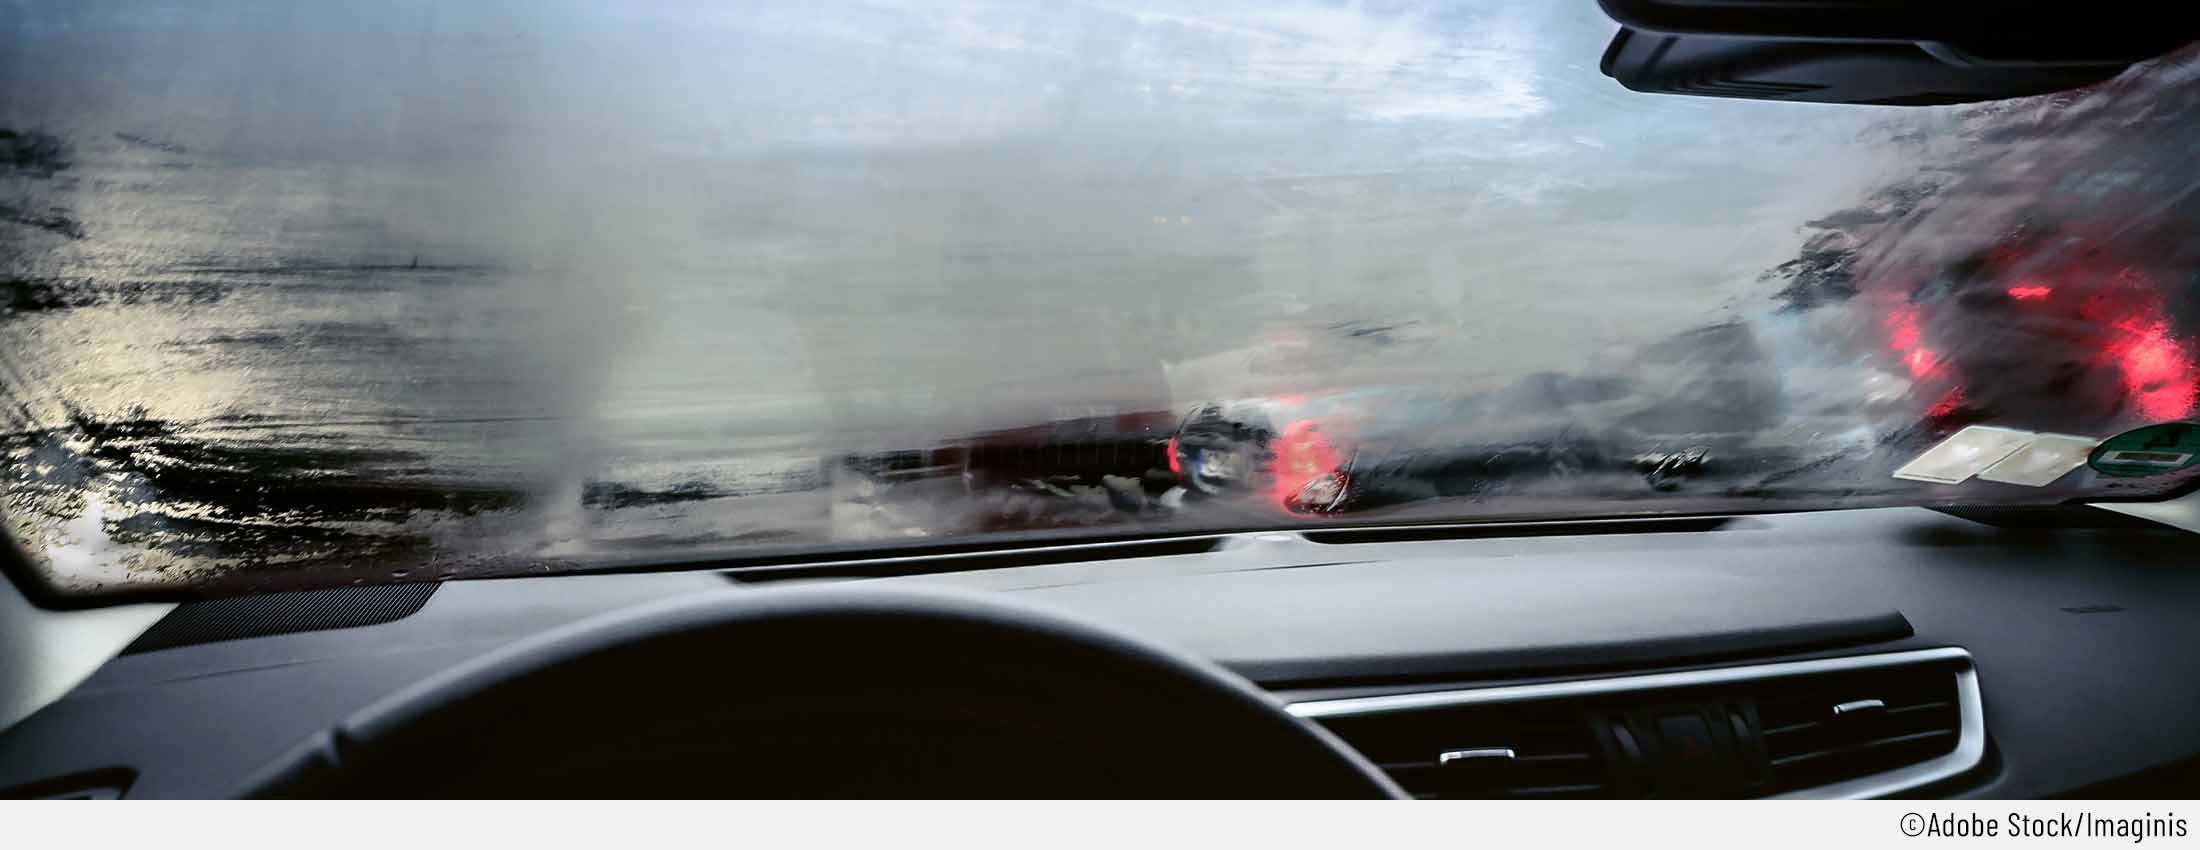 Feuchtigkeit im Auto - Wieso lagert sich Feuchtigkeit ab?